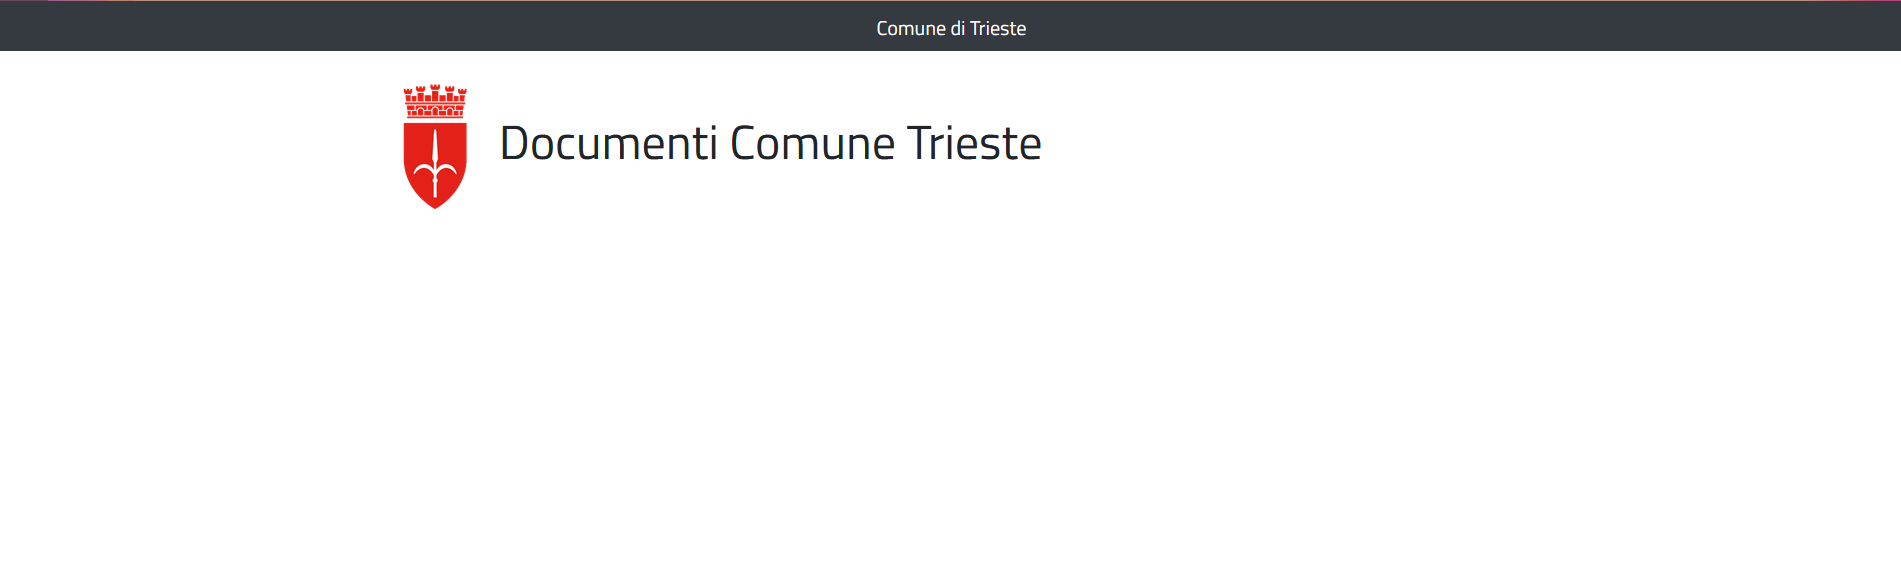 Documenti Comune Trieste